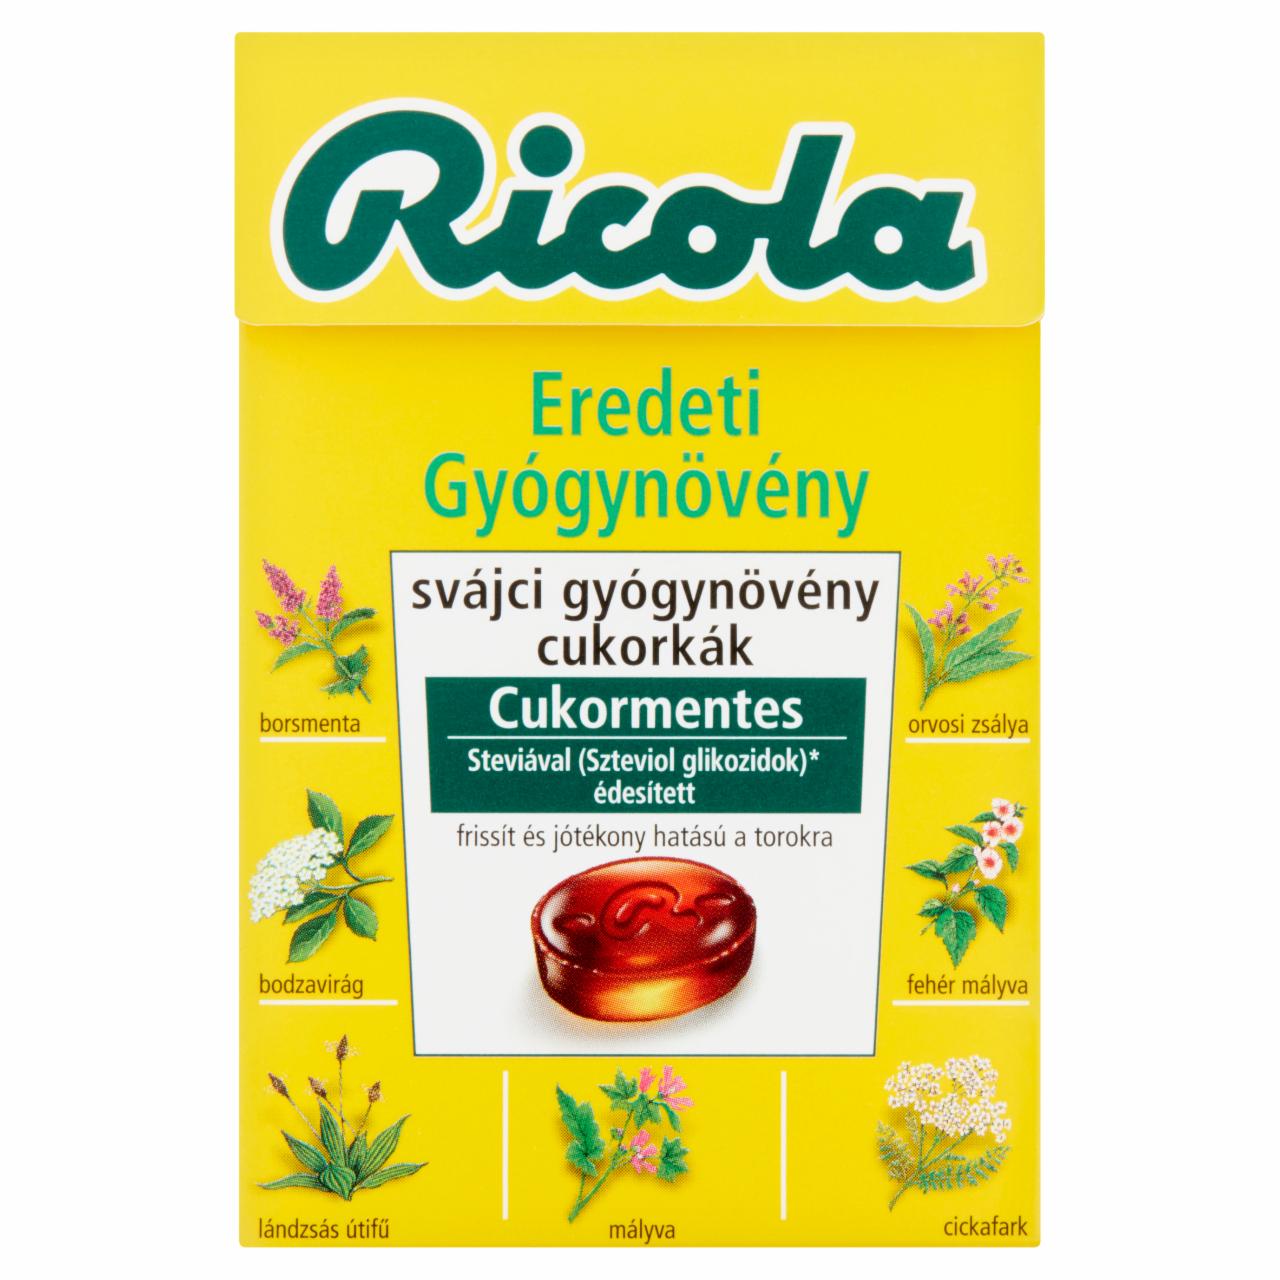 Képek - Ricola Eredeti Gyógynövény cukormentes svájci gyógynövény cukorkák édesítőszerekkel 40 g